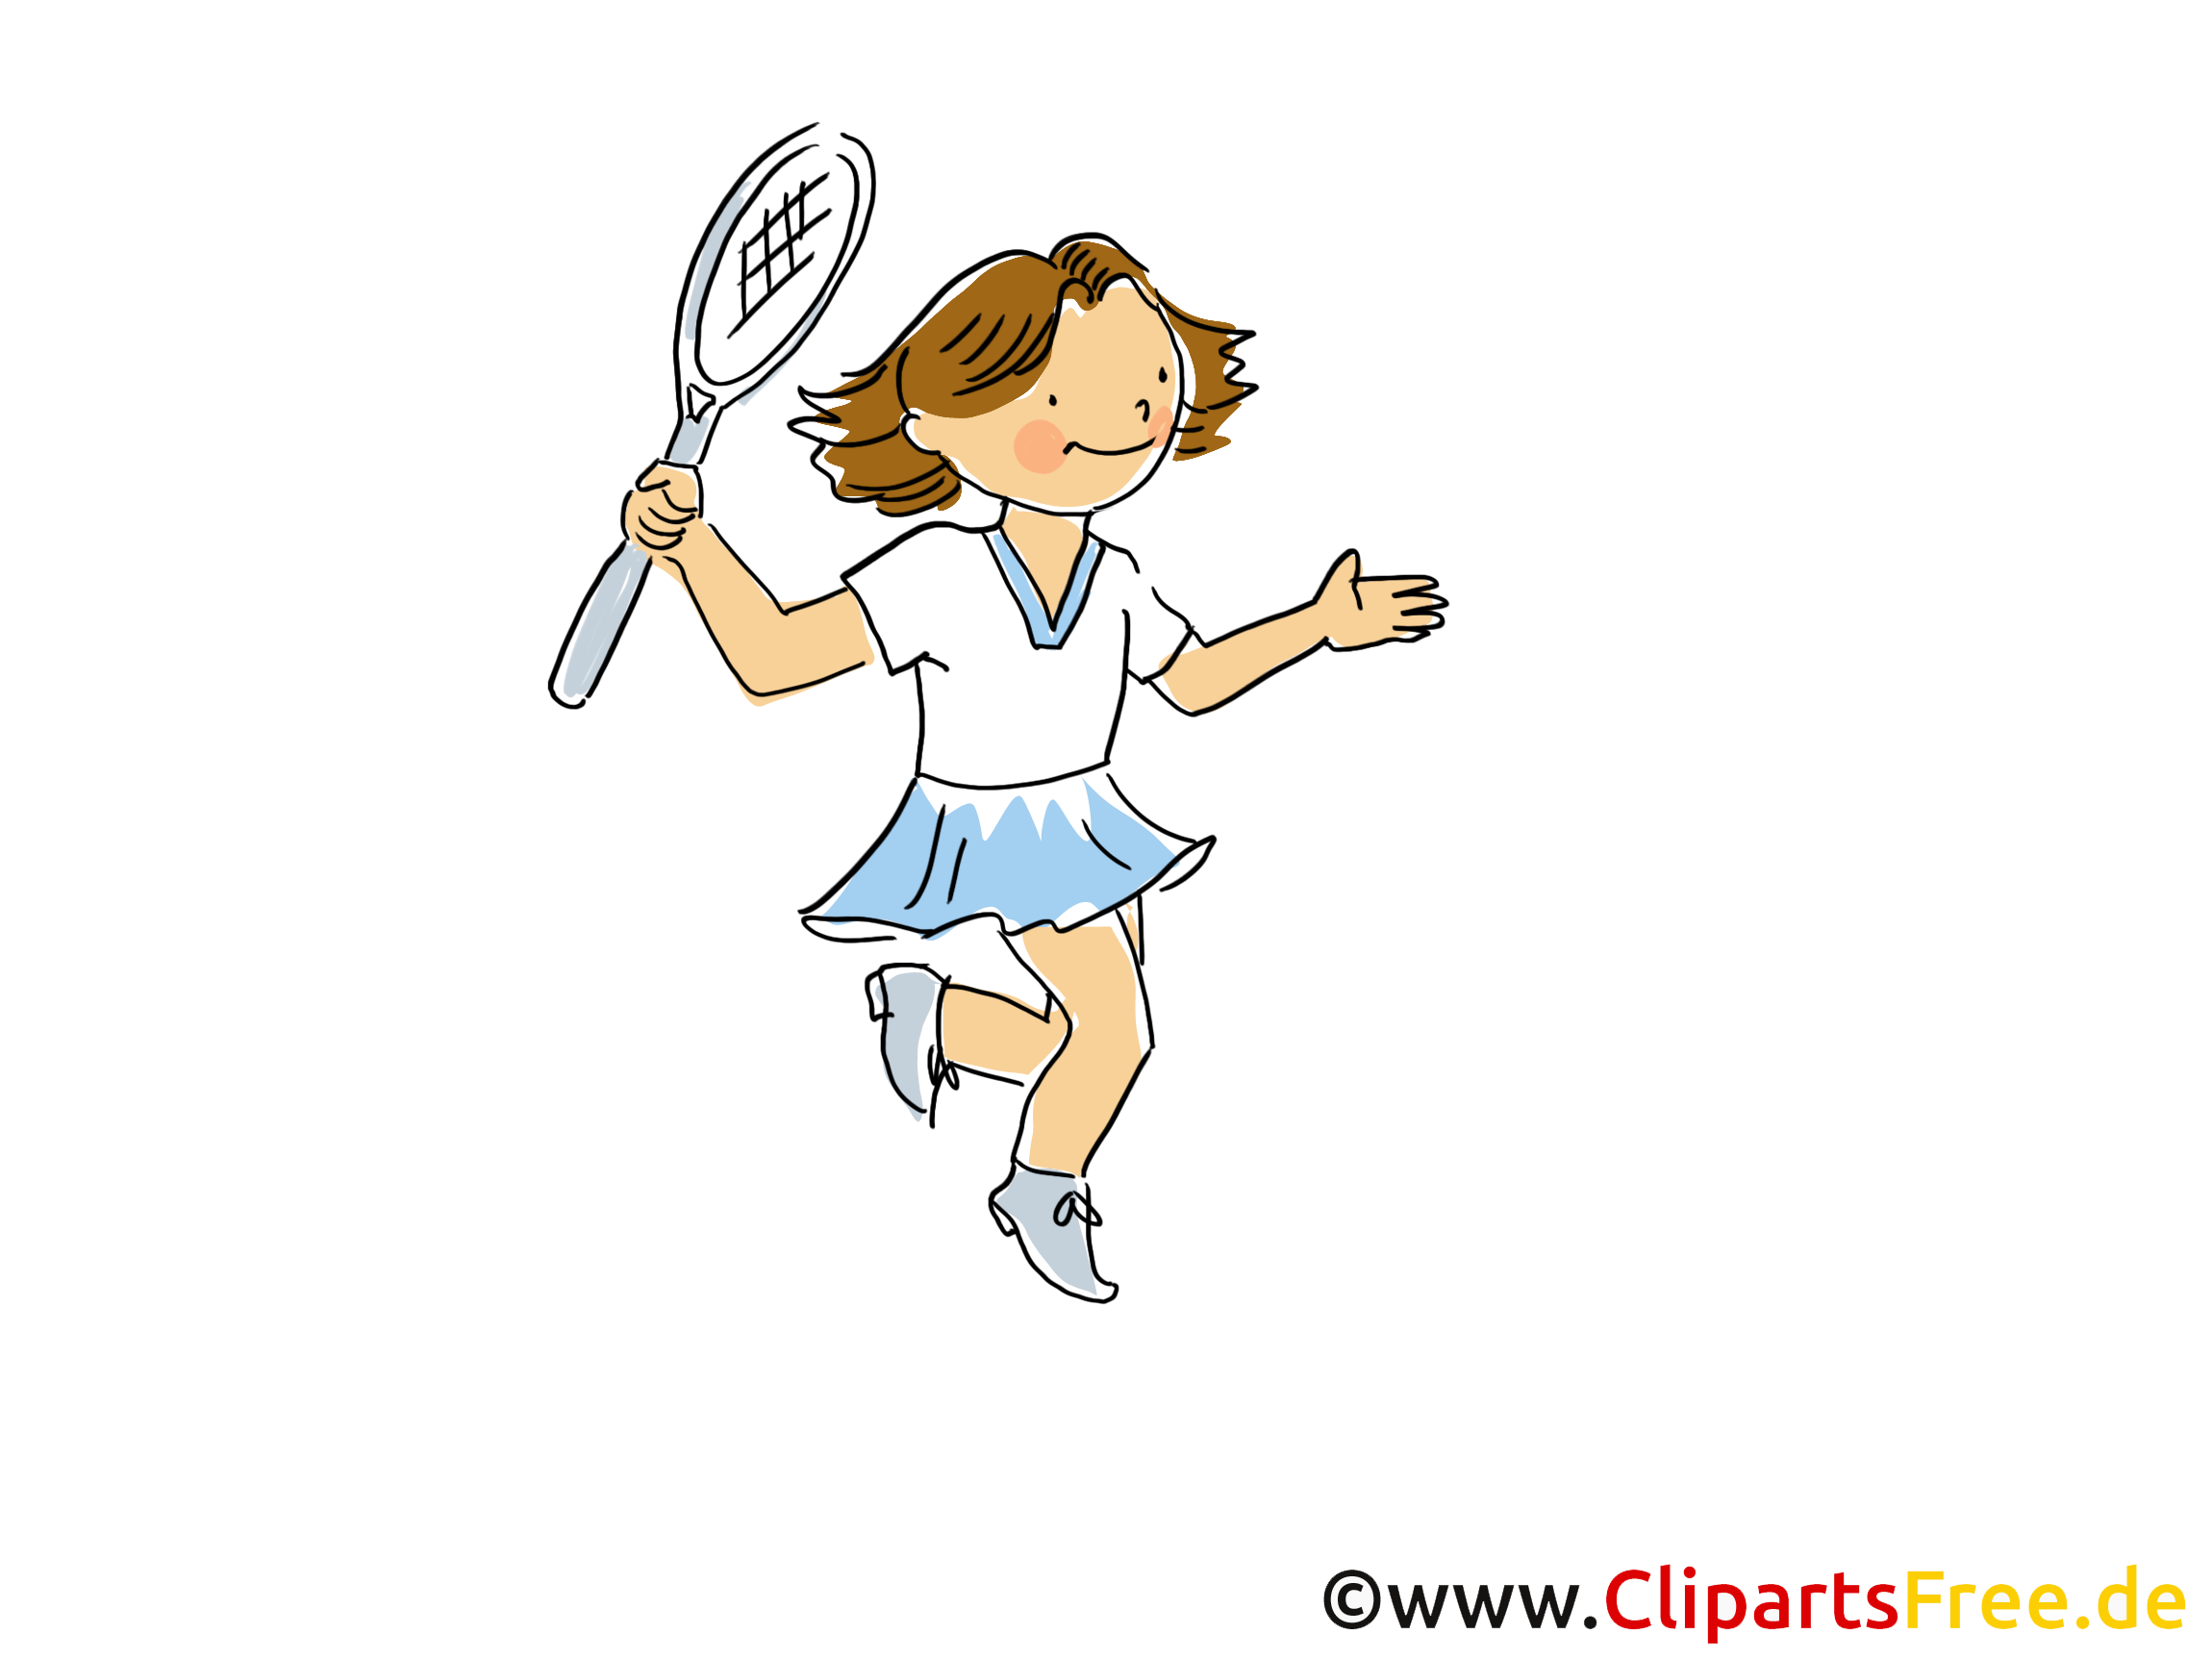 Tennis dessin à télécharger - Badmington images